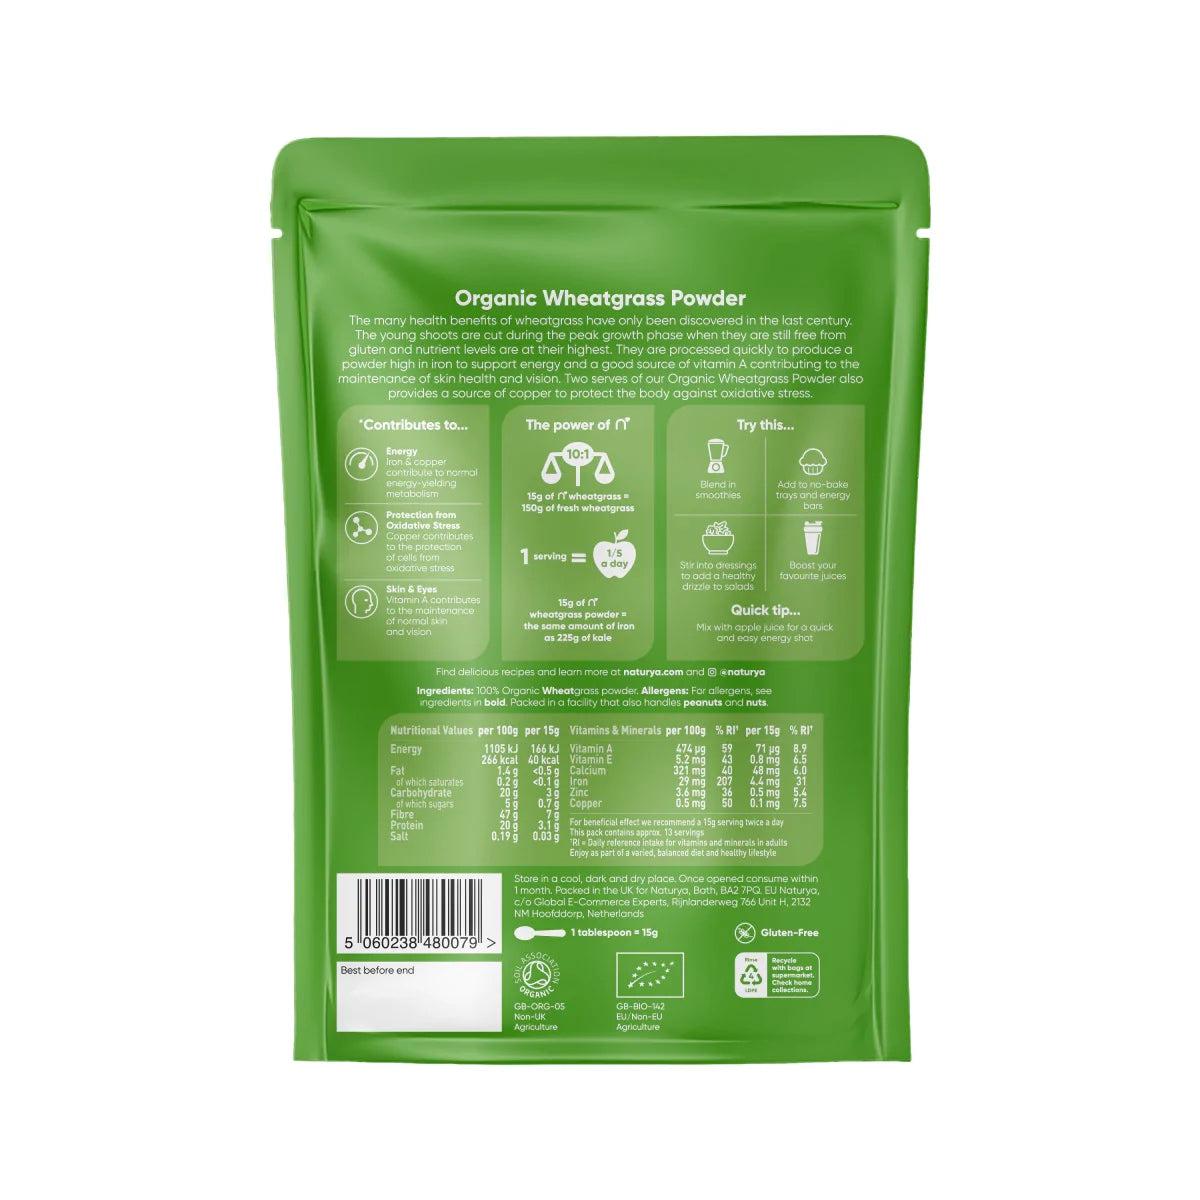 Naturya Organic Wheatgrass powder 200g